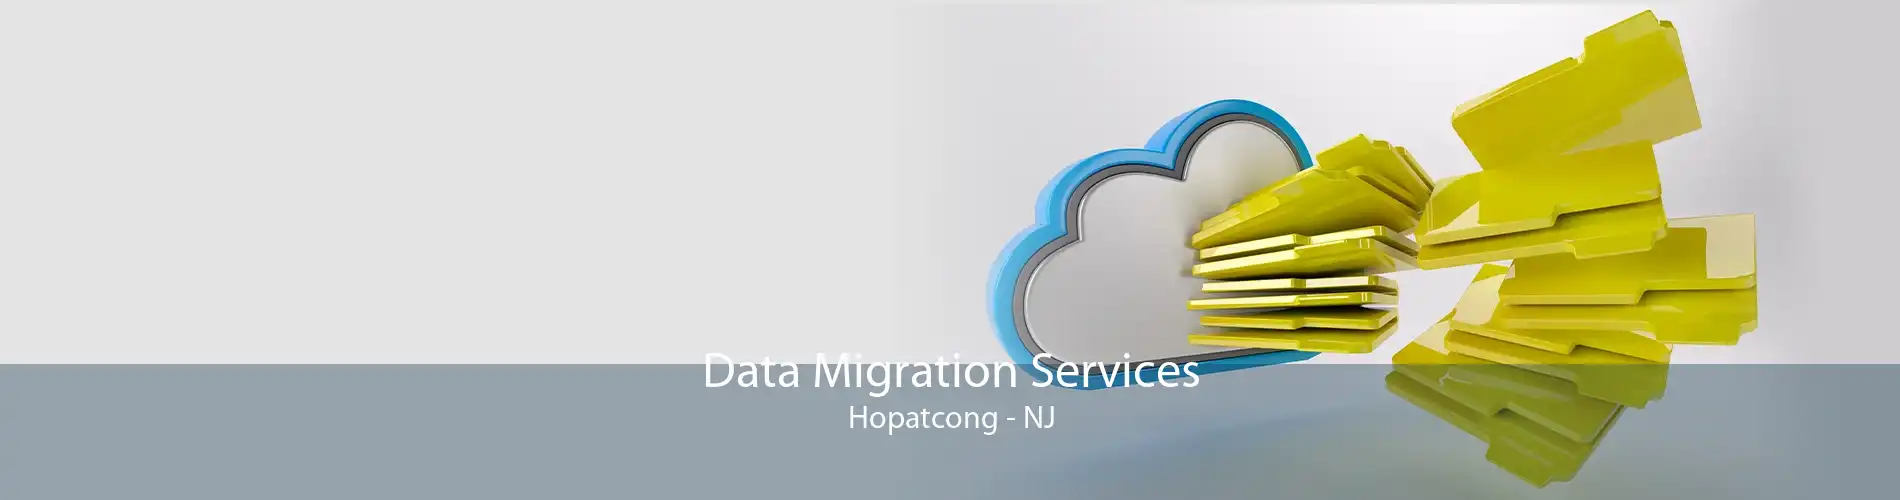 Data Migration Services Hopatcong - NJ